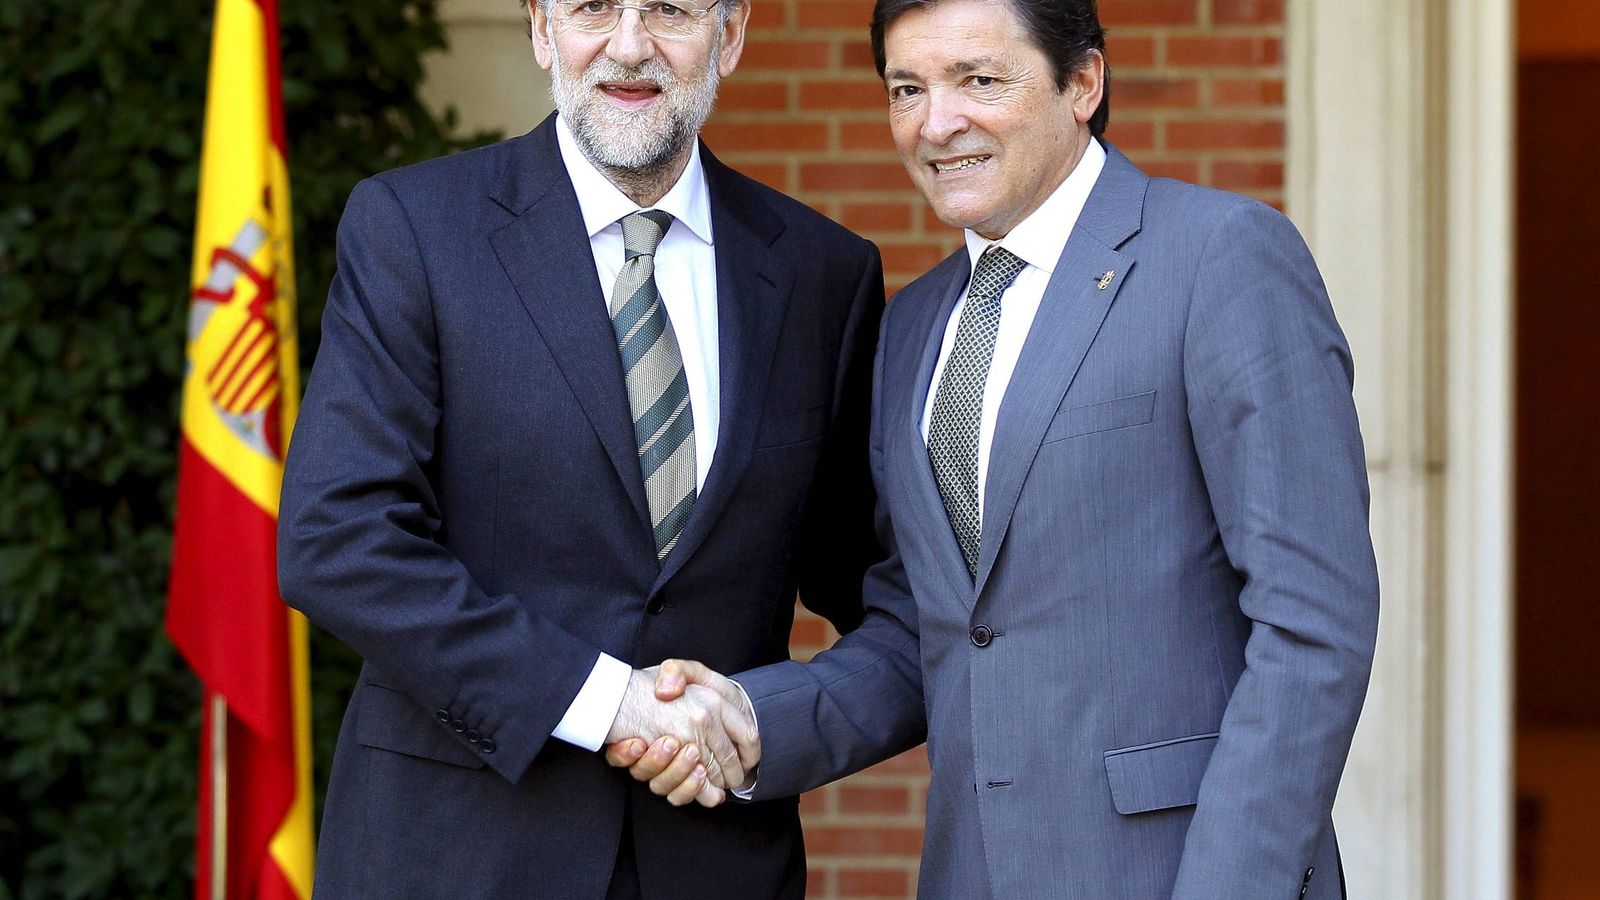 Foto: El presidente del Gobierno, Mariano Rajoy (i), saluda al socialista Javier Fernández, mientras este era jefe del Ejecutivo asturiano (d), en 2012. (EFE)